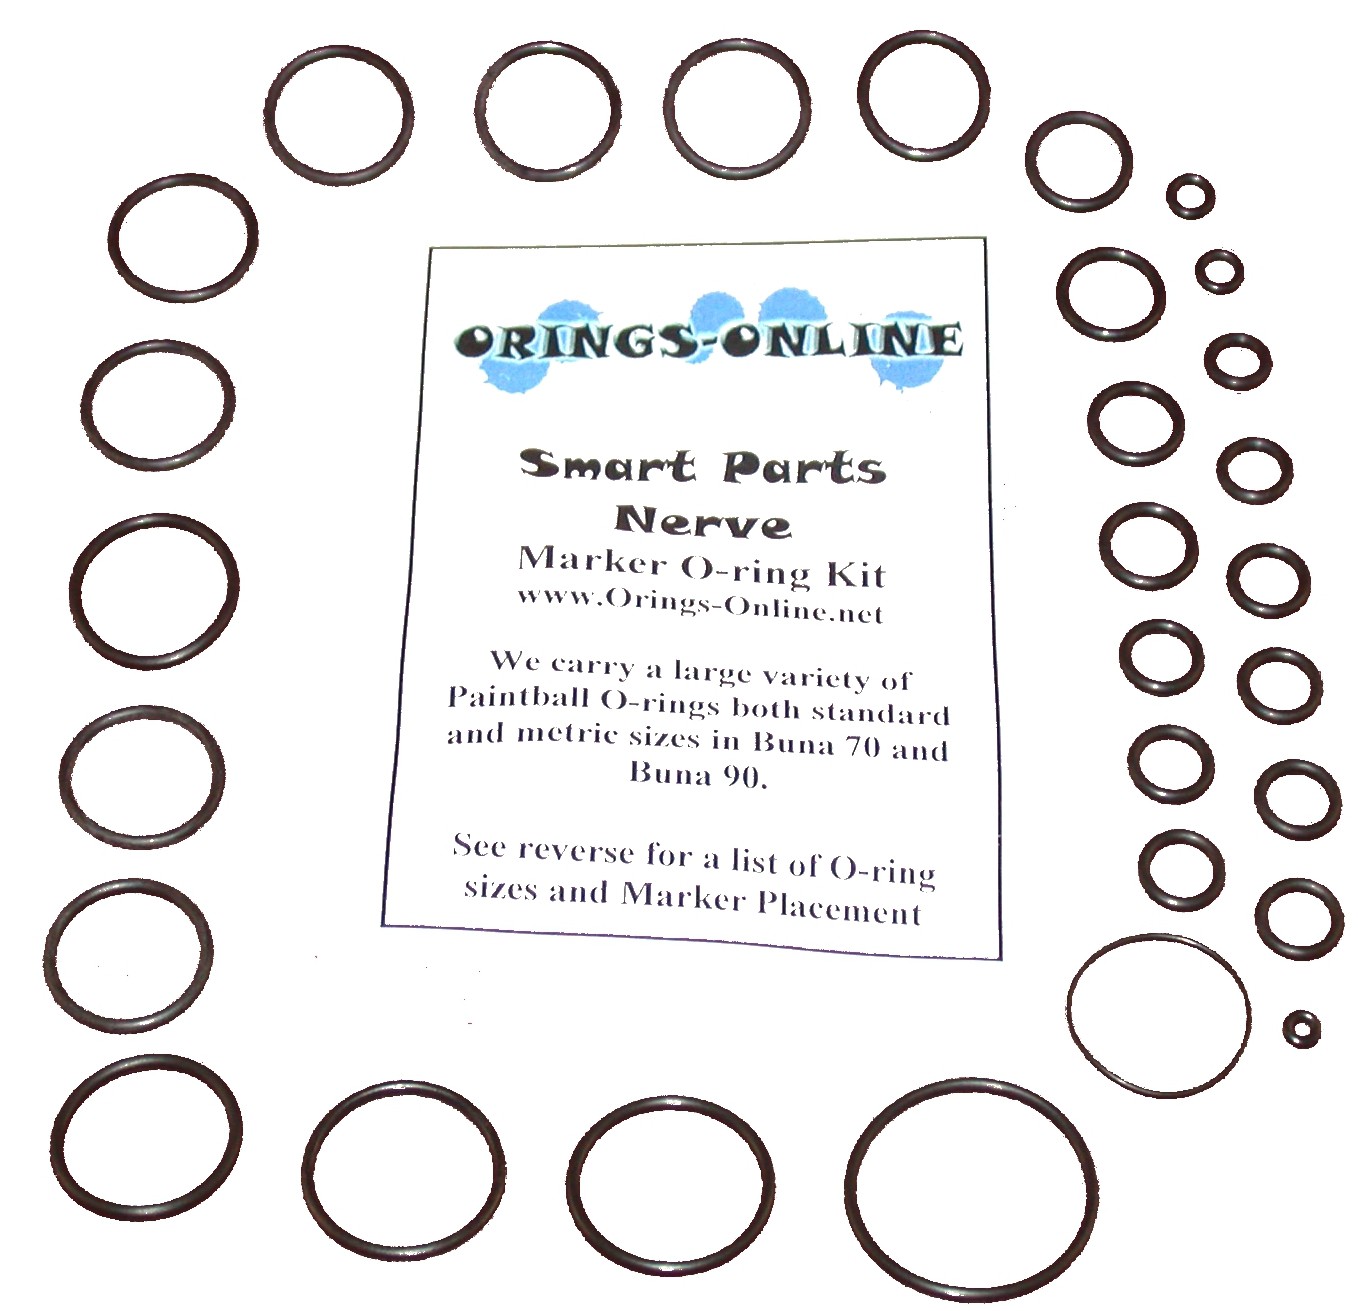 Smart Parts - Nerve Marker O-ring Kit